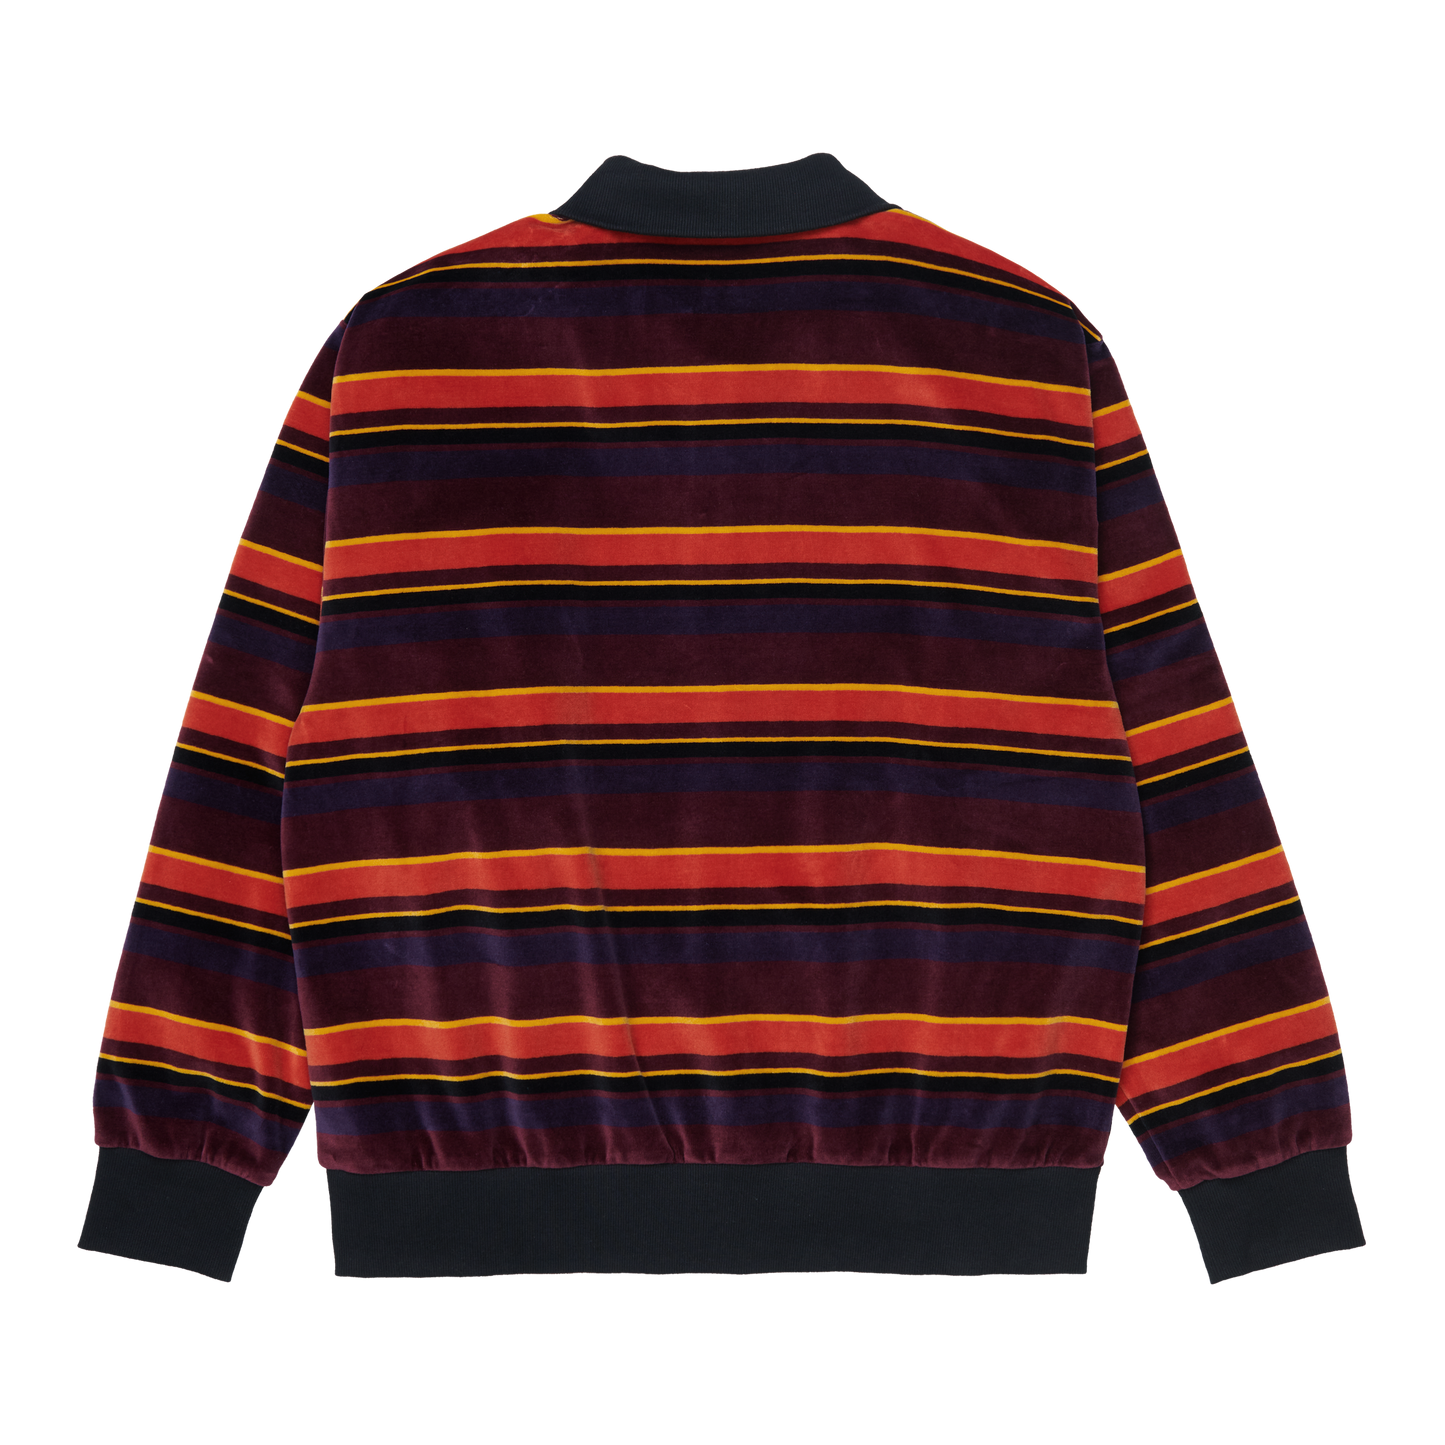 Carhartt WIP Half Zip Glenwood Sweatshirt